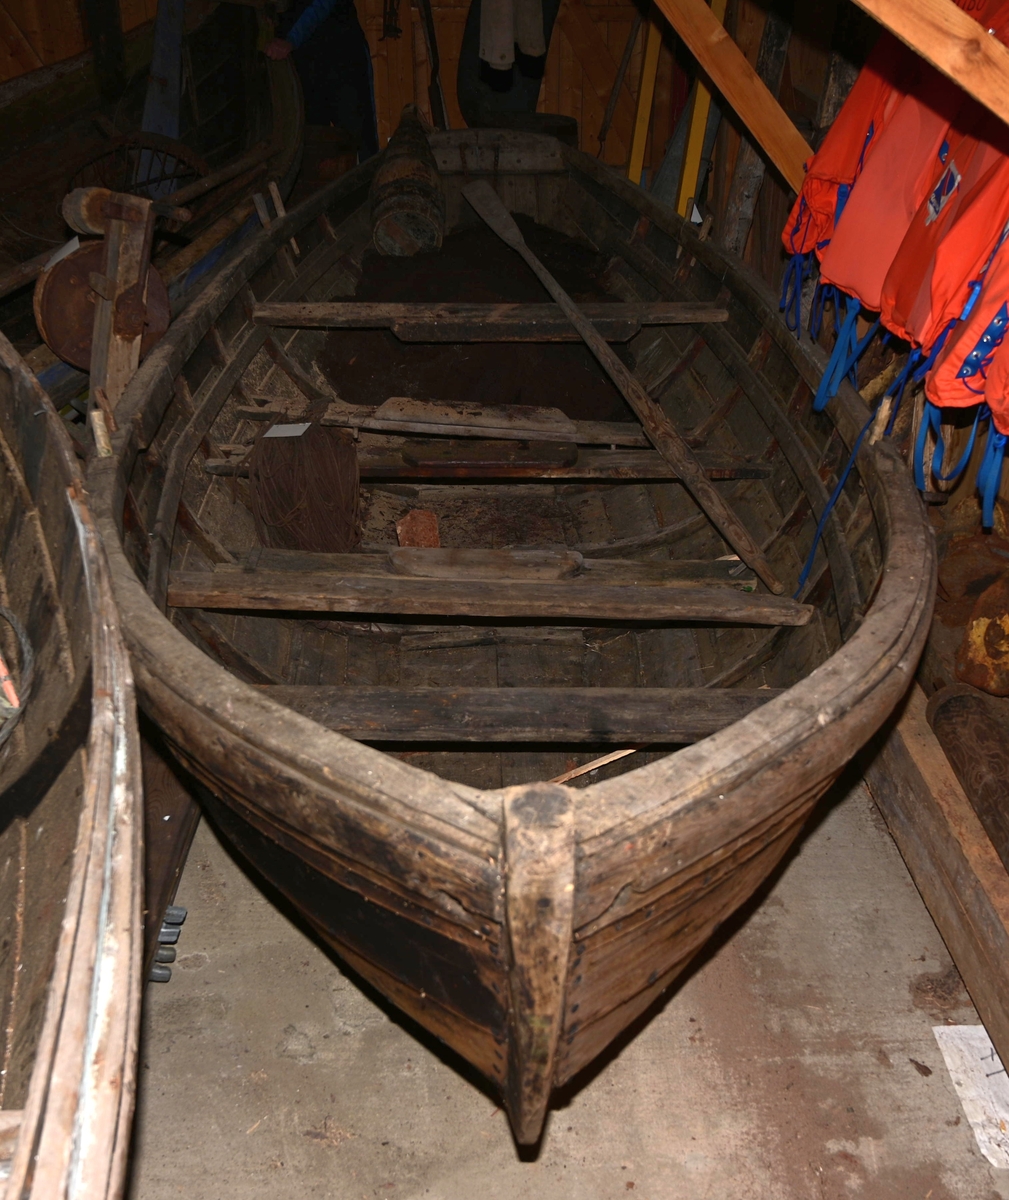 Båten er en dorry som er klinkbygd med 7 bordganger. Den har to årepar, og kjettinger til å løfte den opp. Båten er platt i hekken.